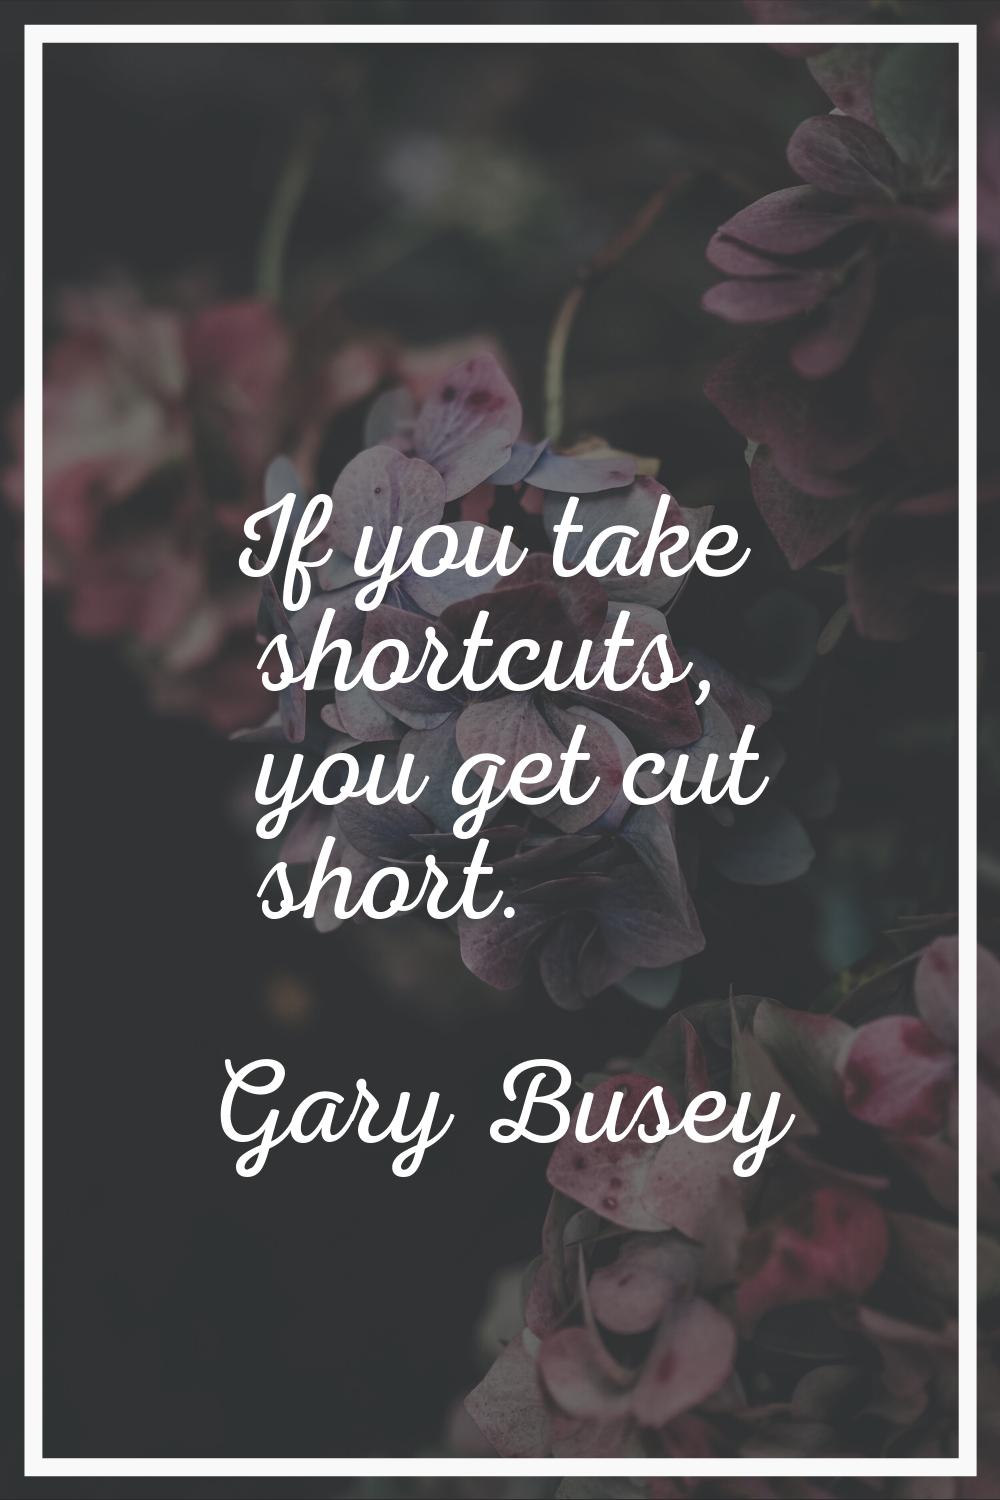 If you take shortcuts, you get cut short.